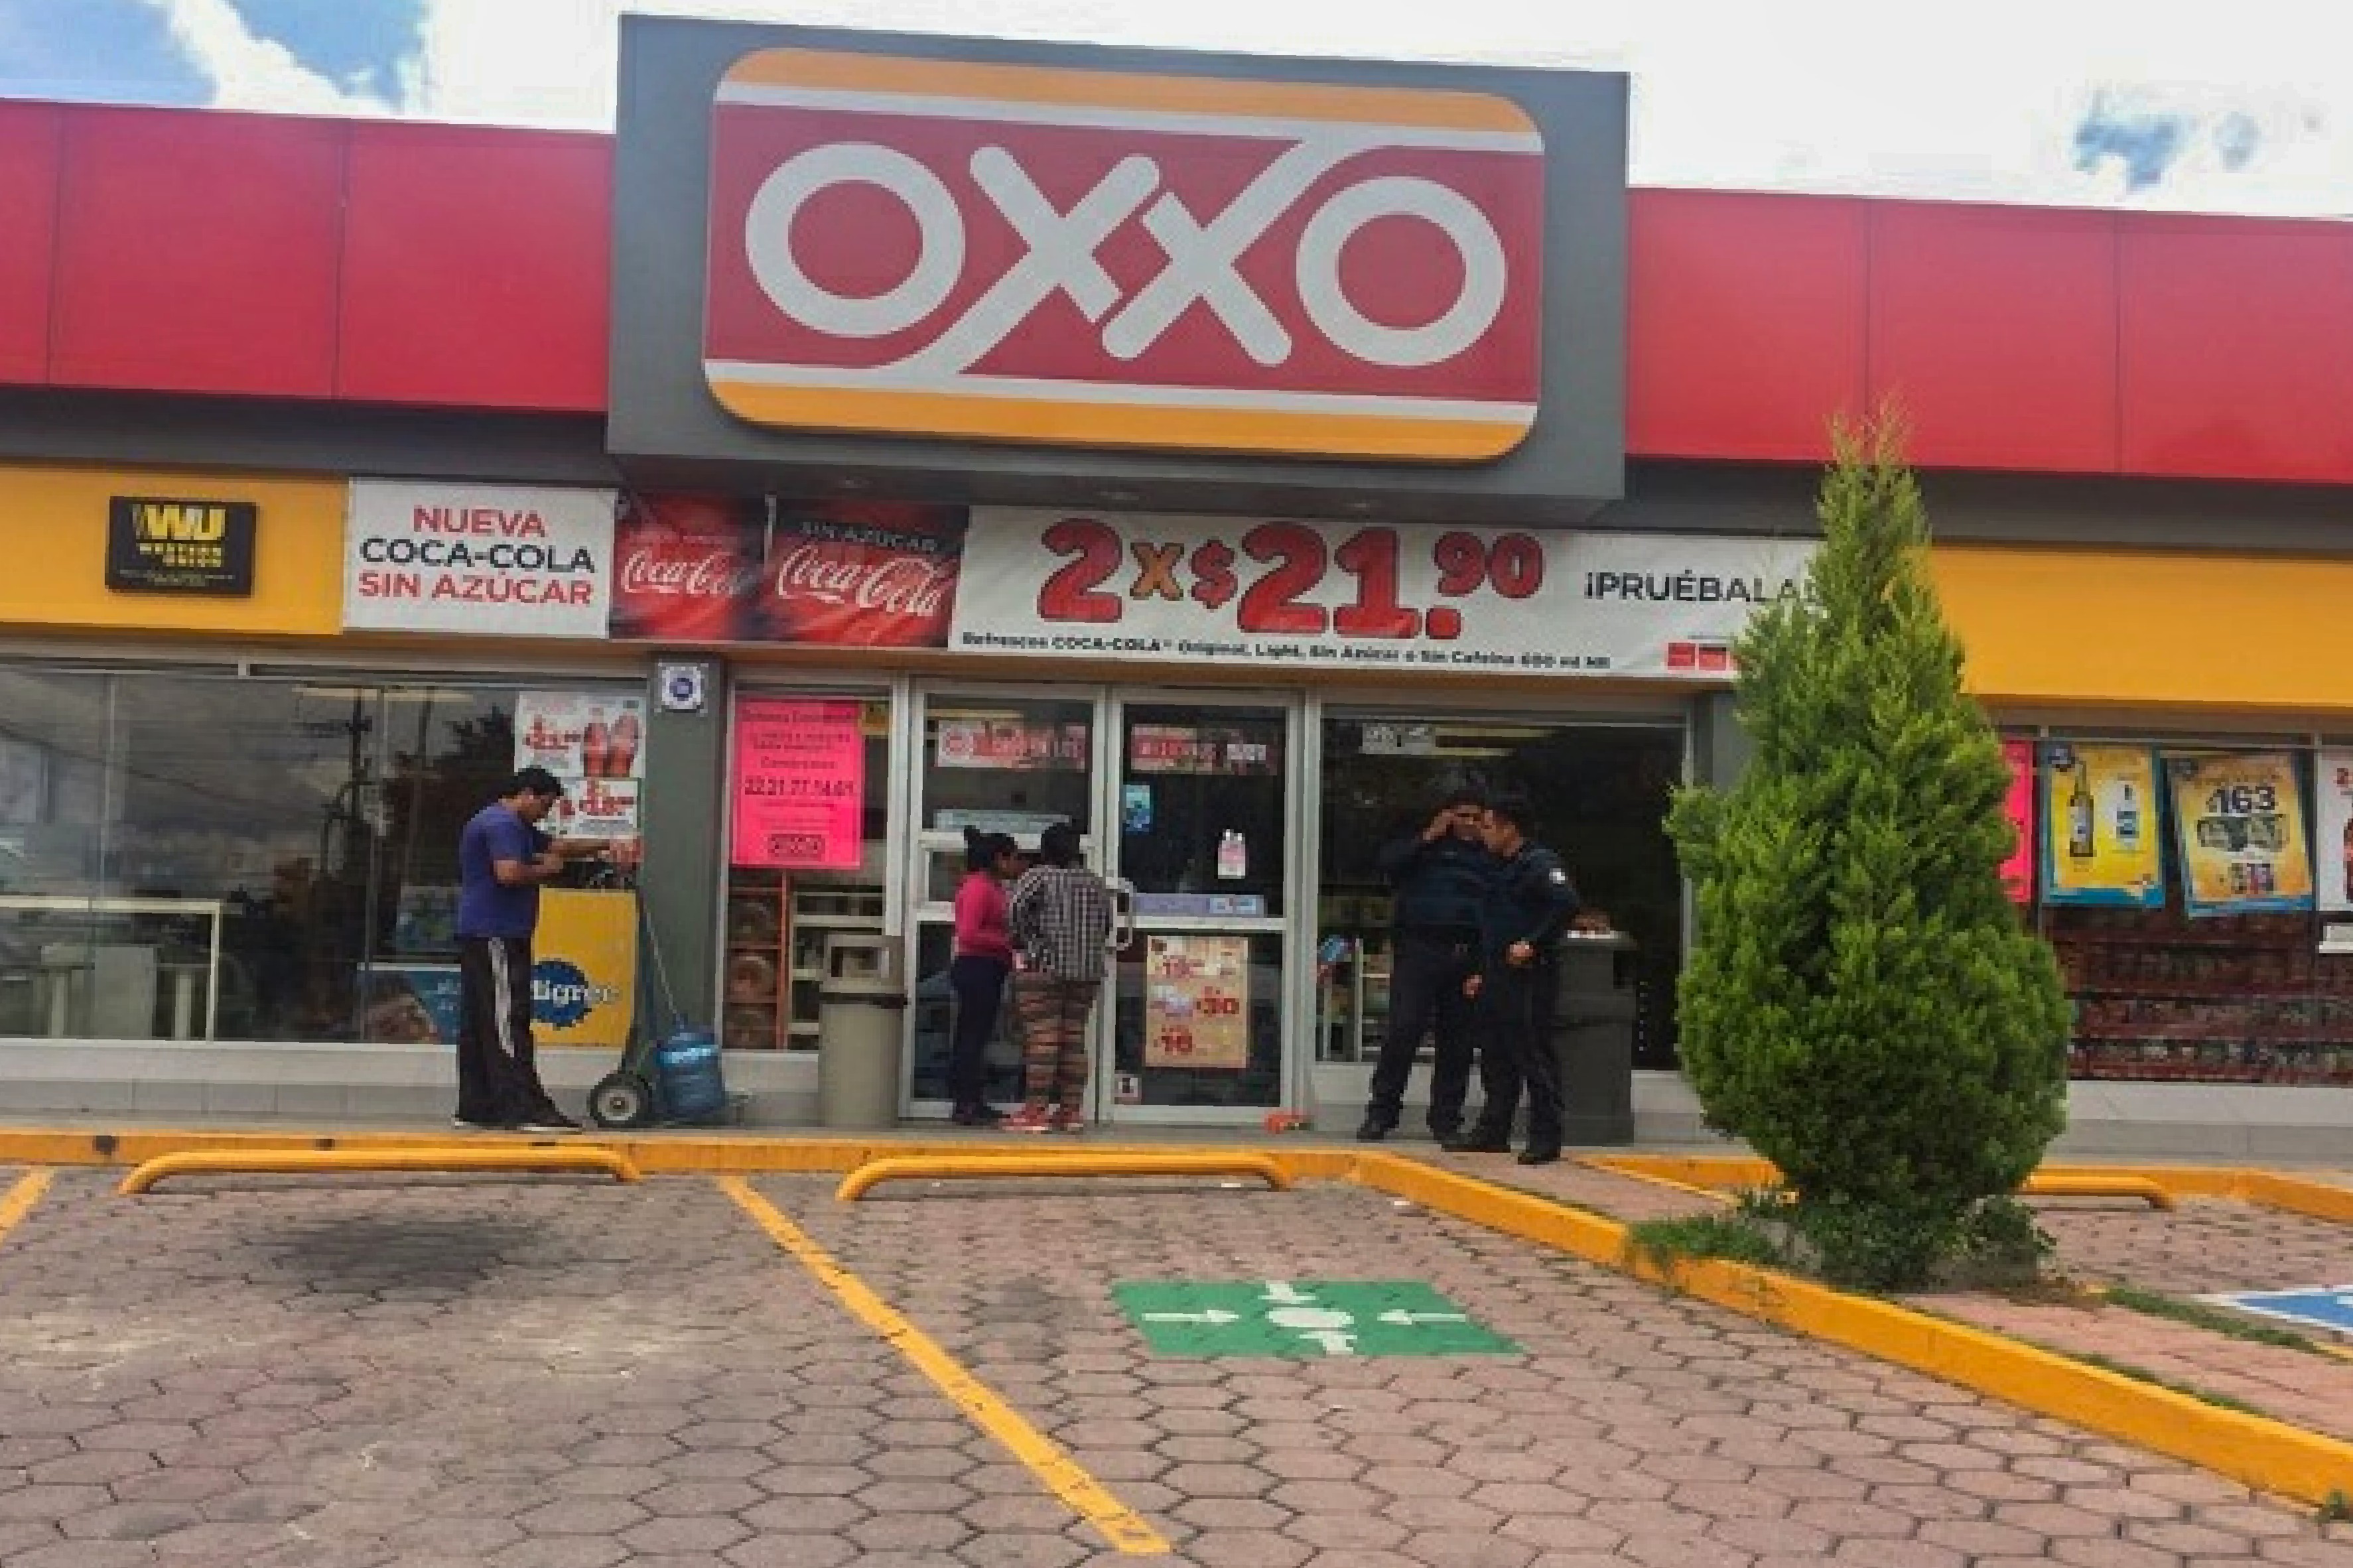 Suspende Oxxo servicio de depósitos de manera temporal